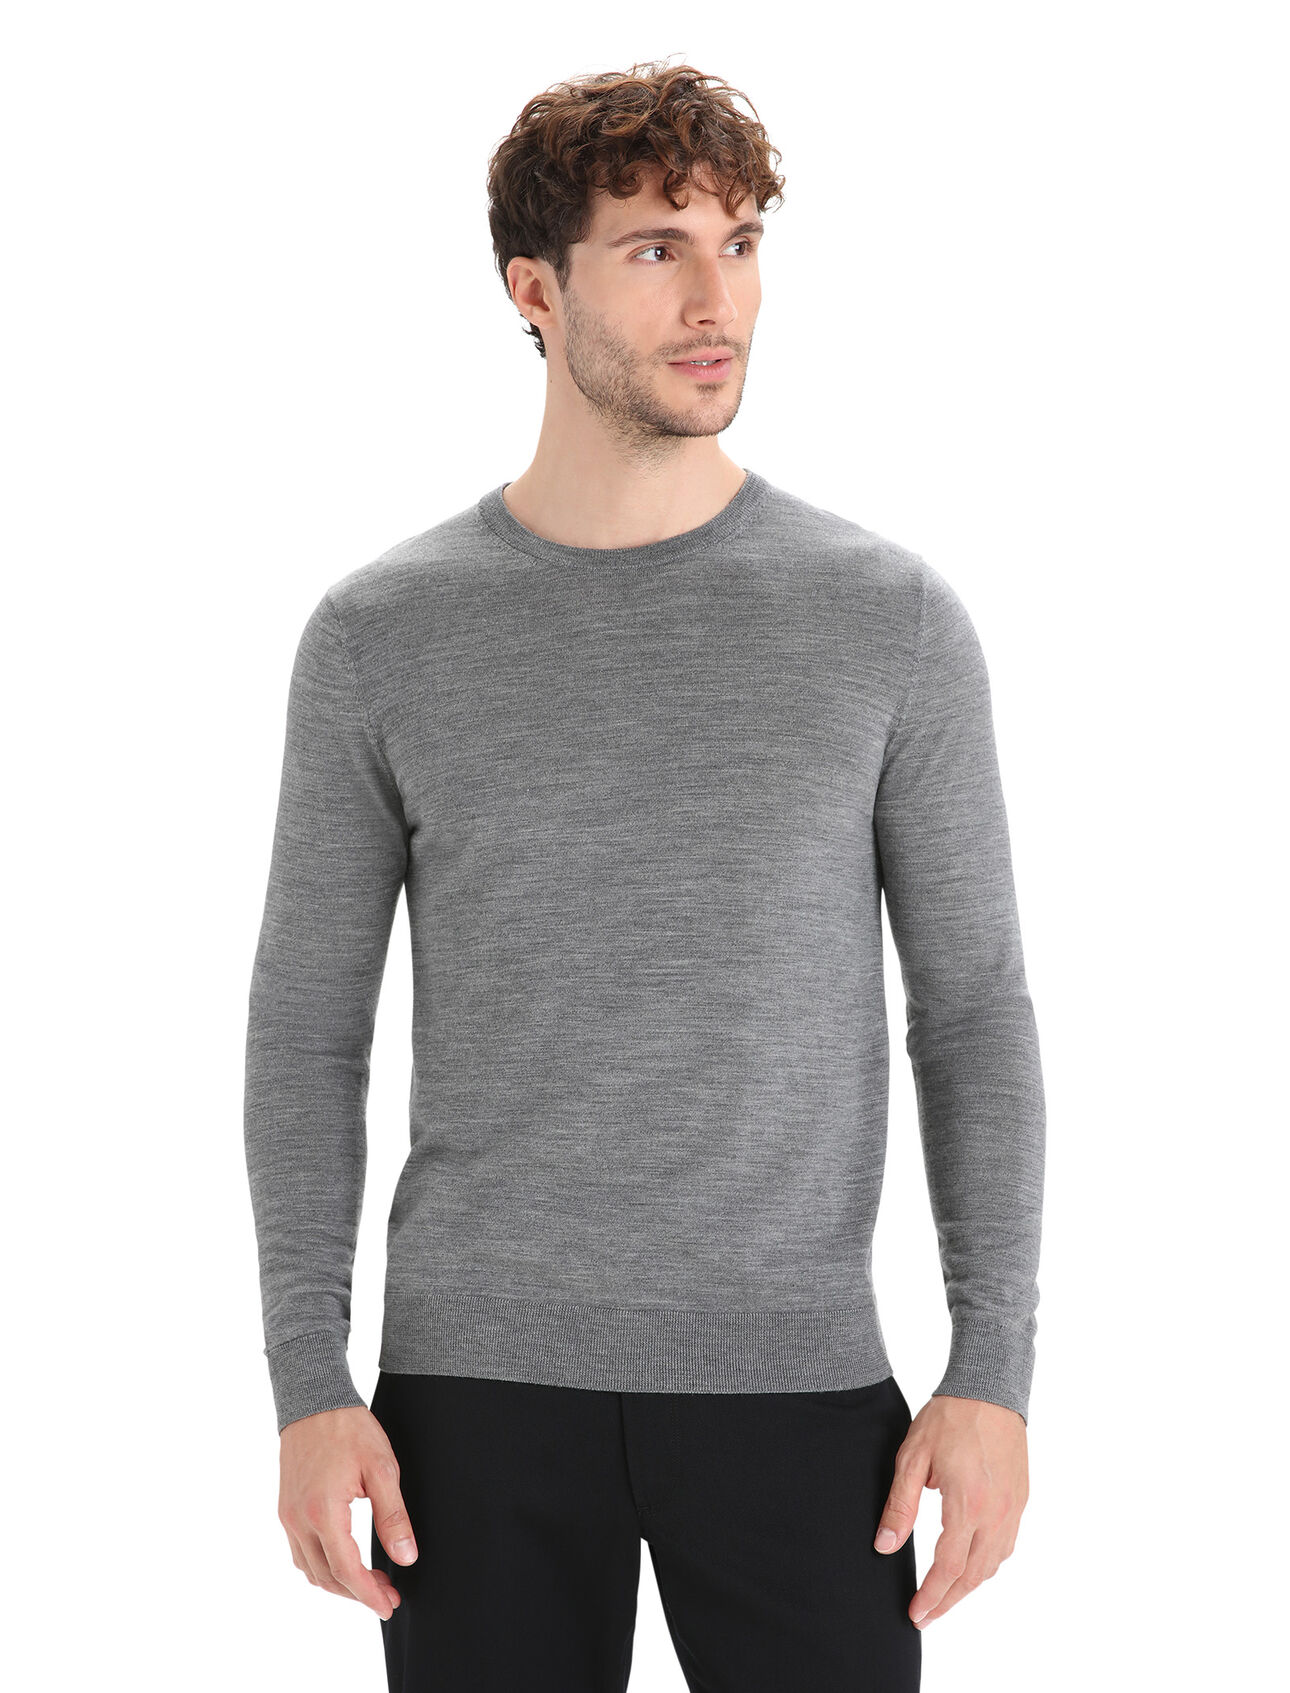 Merino Wilcox Sweater Herren Ein klassischer Pullover für jeden Tag aus feinster Merinowolle, der Wilcox Sweater verwöhnt mit einem unvergleichlich weichen Tragegefühl und ist der perfekte Begleiter an Tagen, an denen du einen zusätzlichen leichten Layer brauchst.